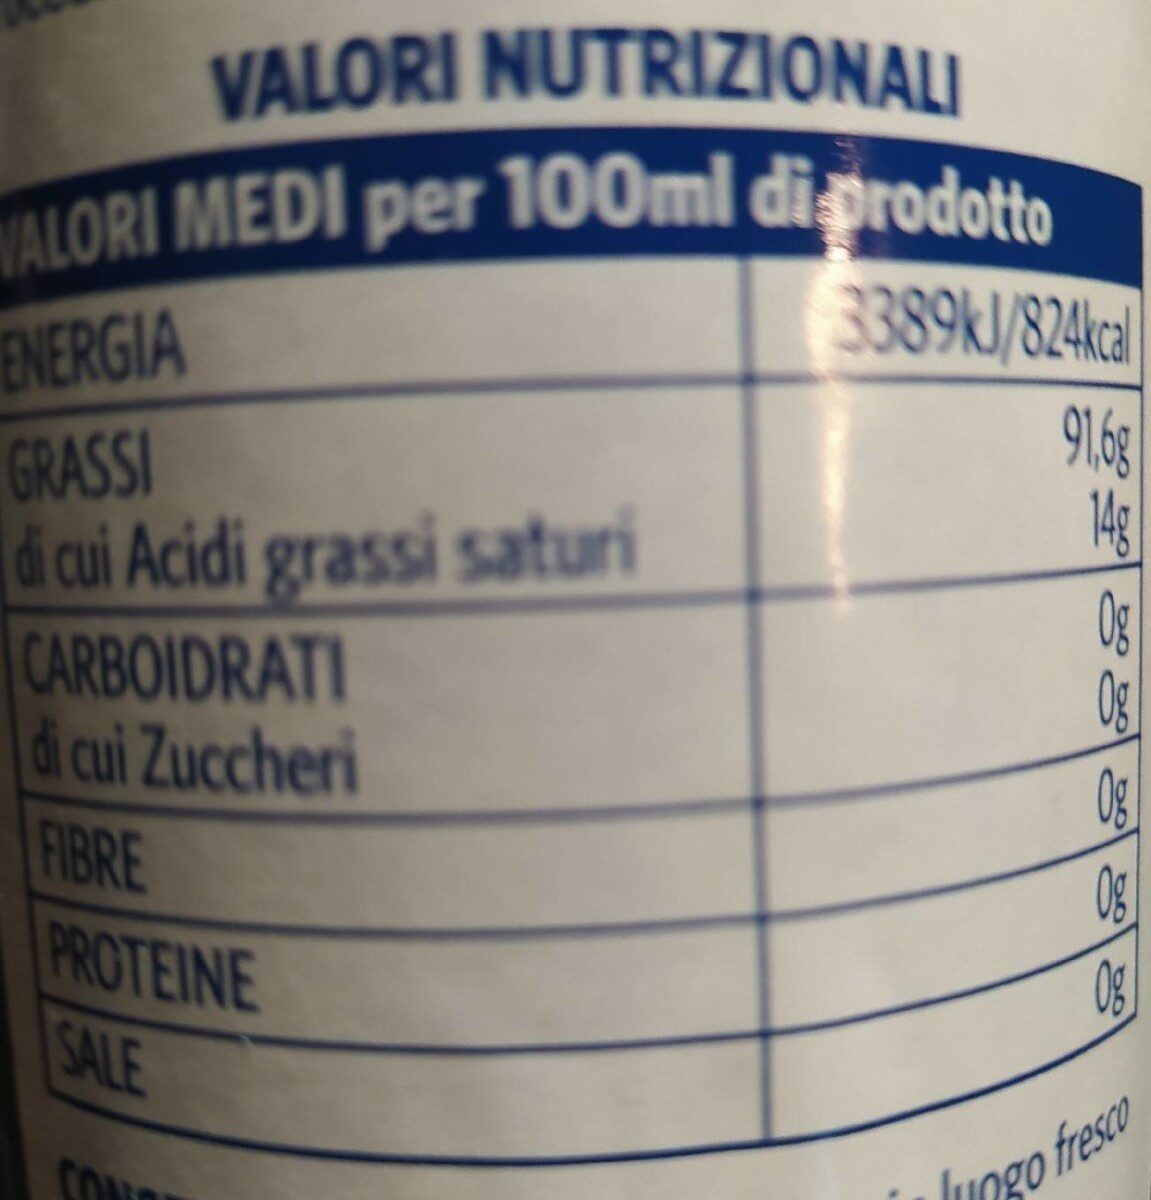 olio extra vergine di oliva Umbria Colli Martani DOP - Nutrition facts - it